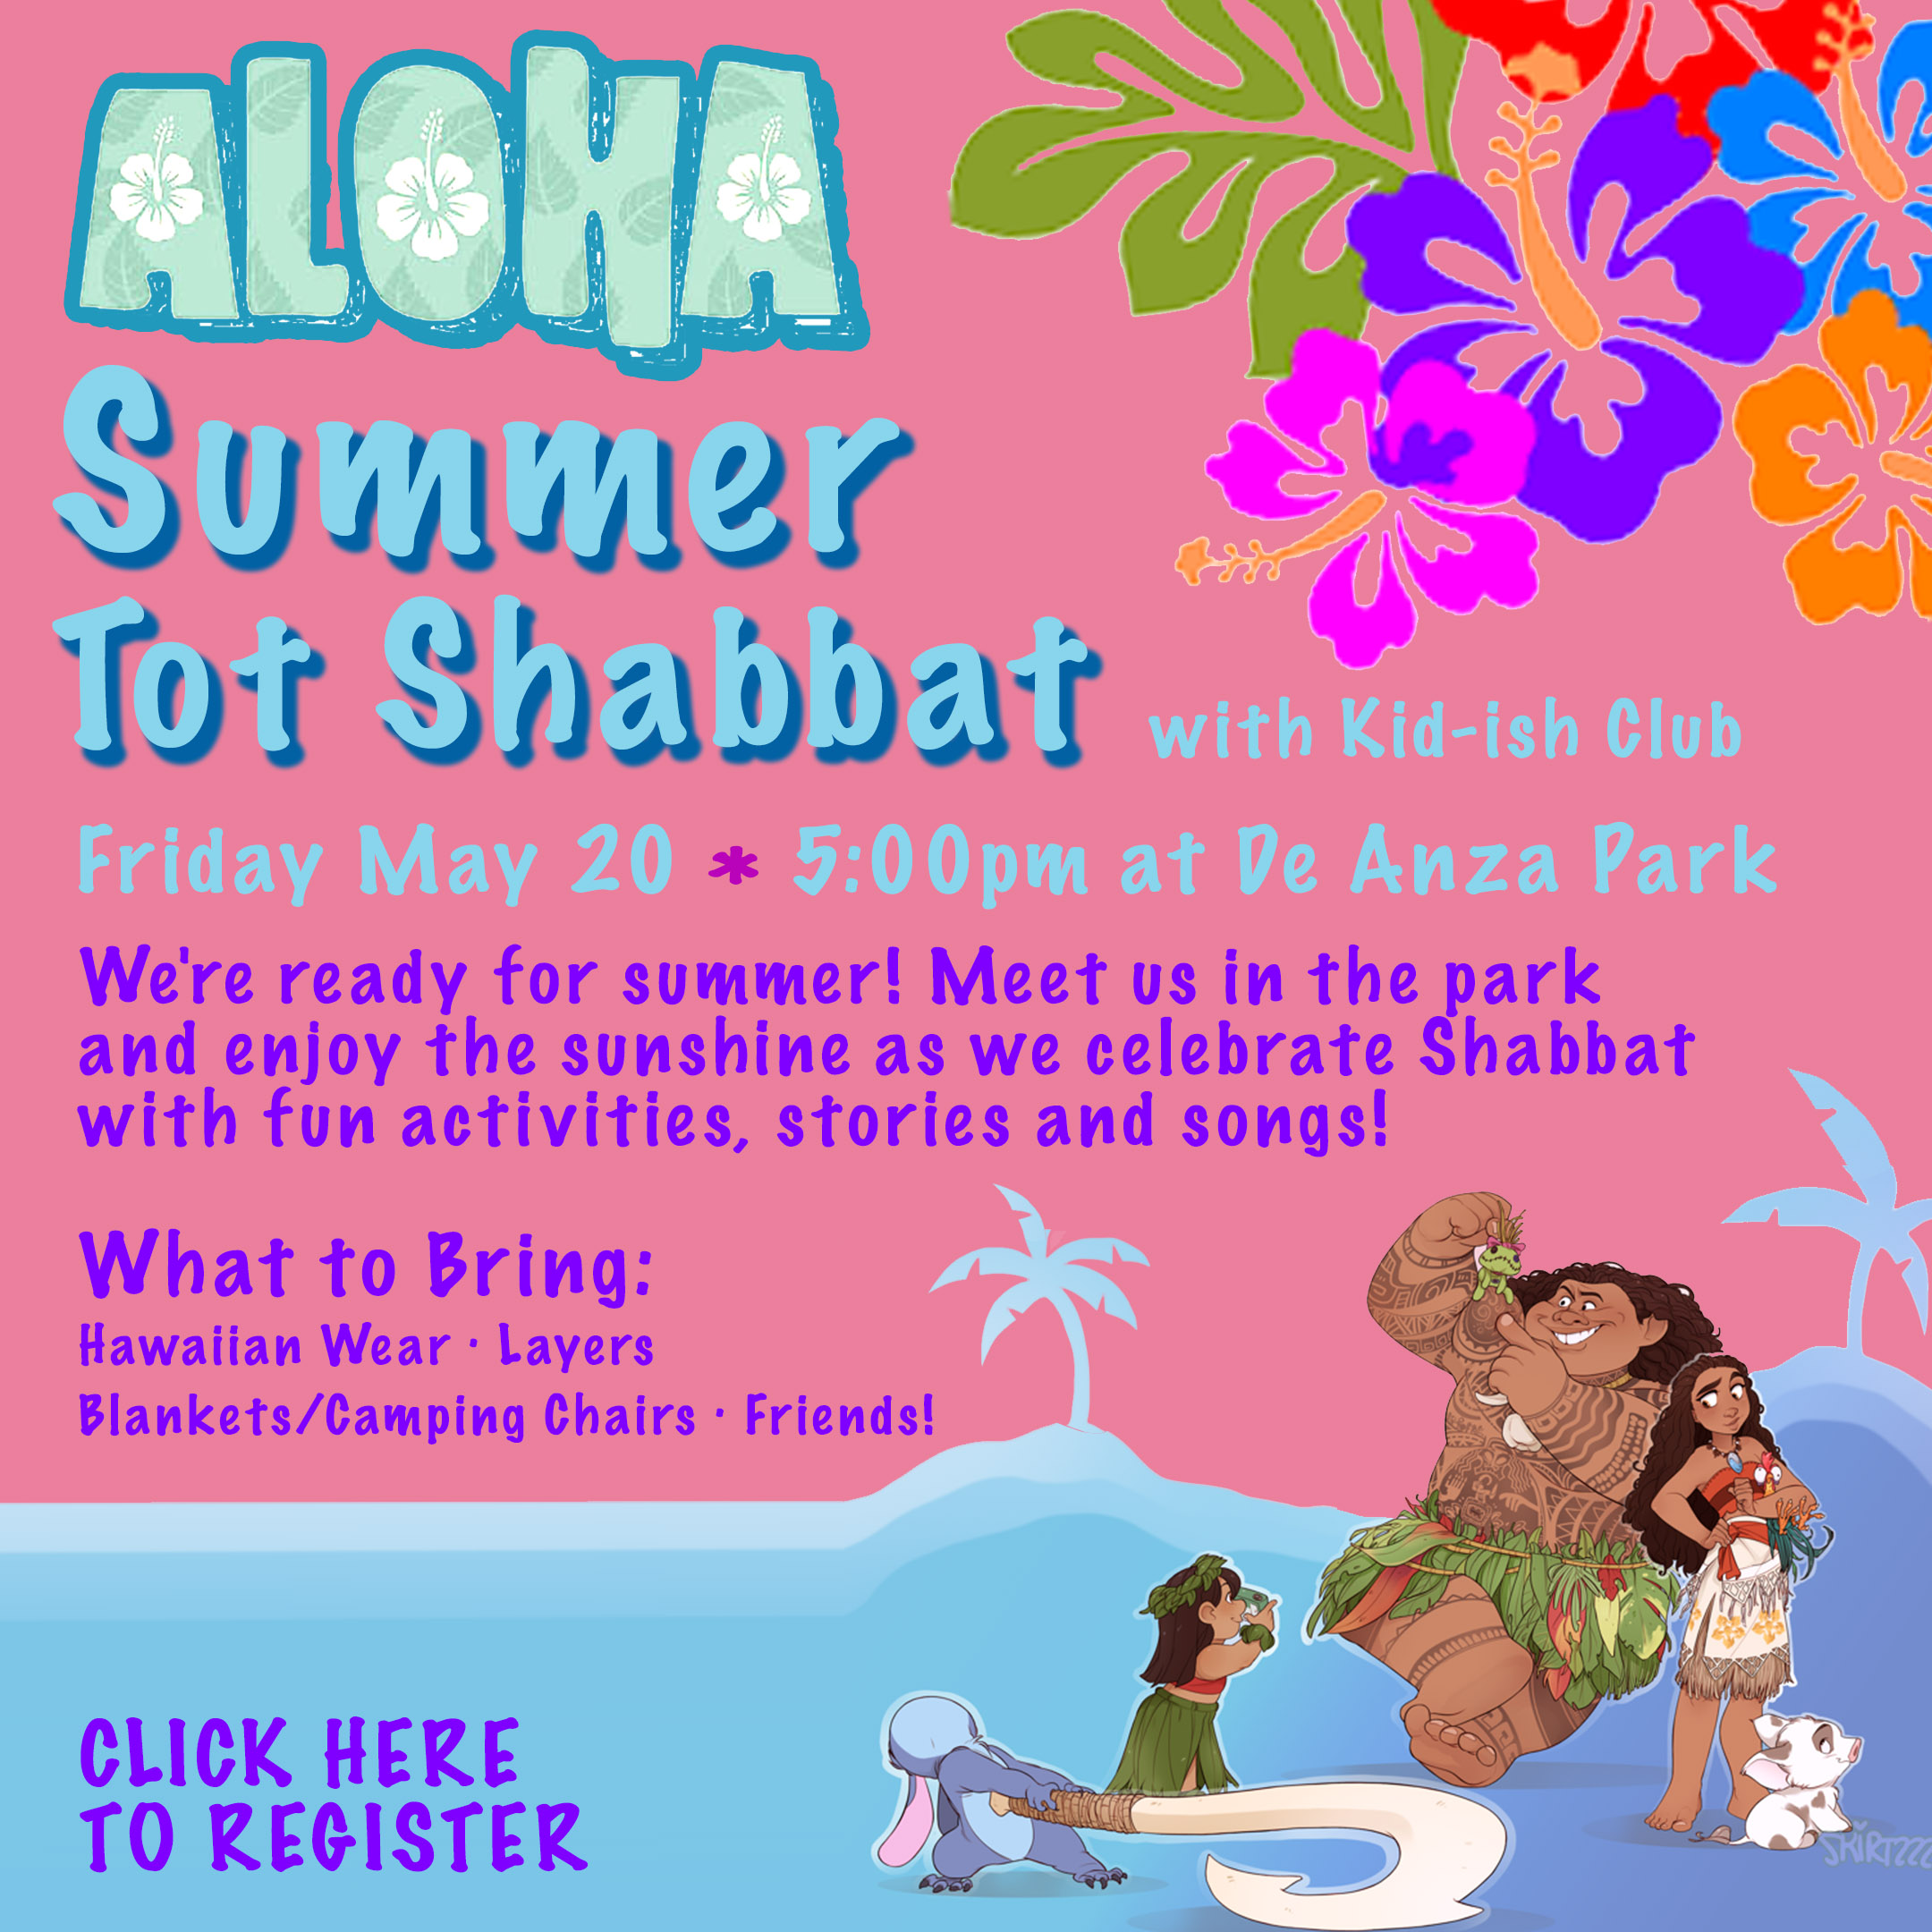 aloha summer tot shabbat with CLICK